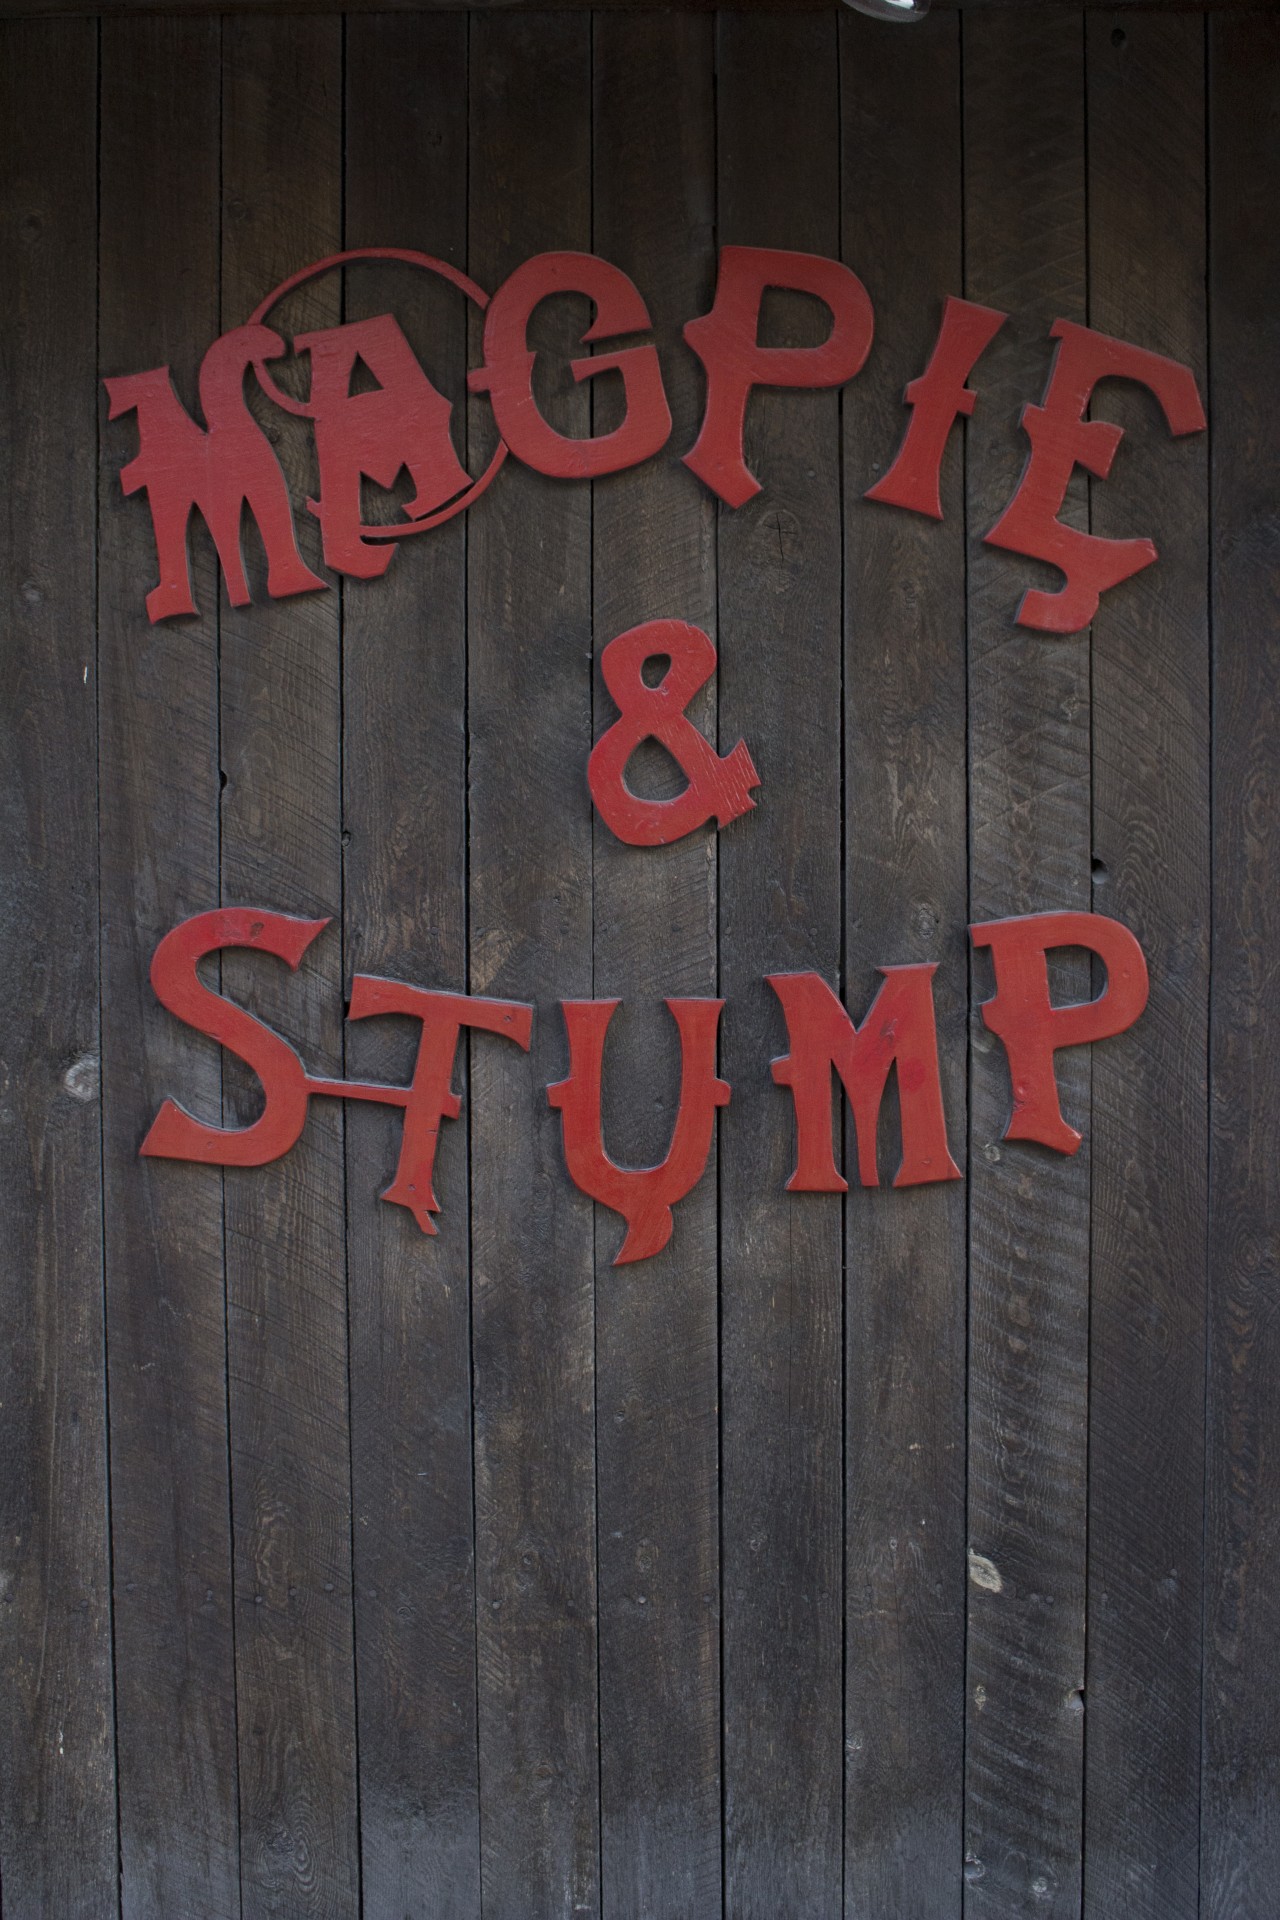 magpie stump pub sign free photo